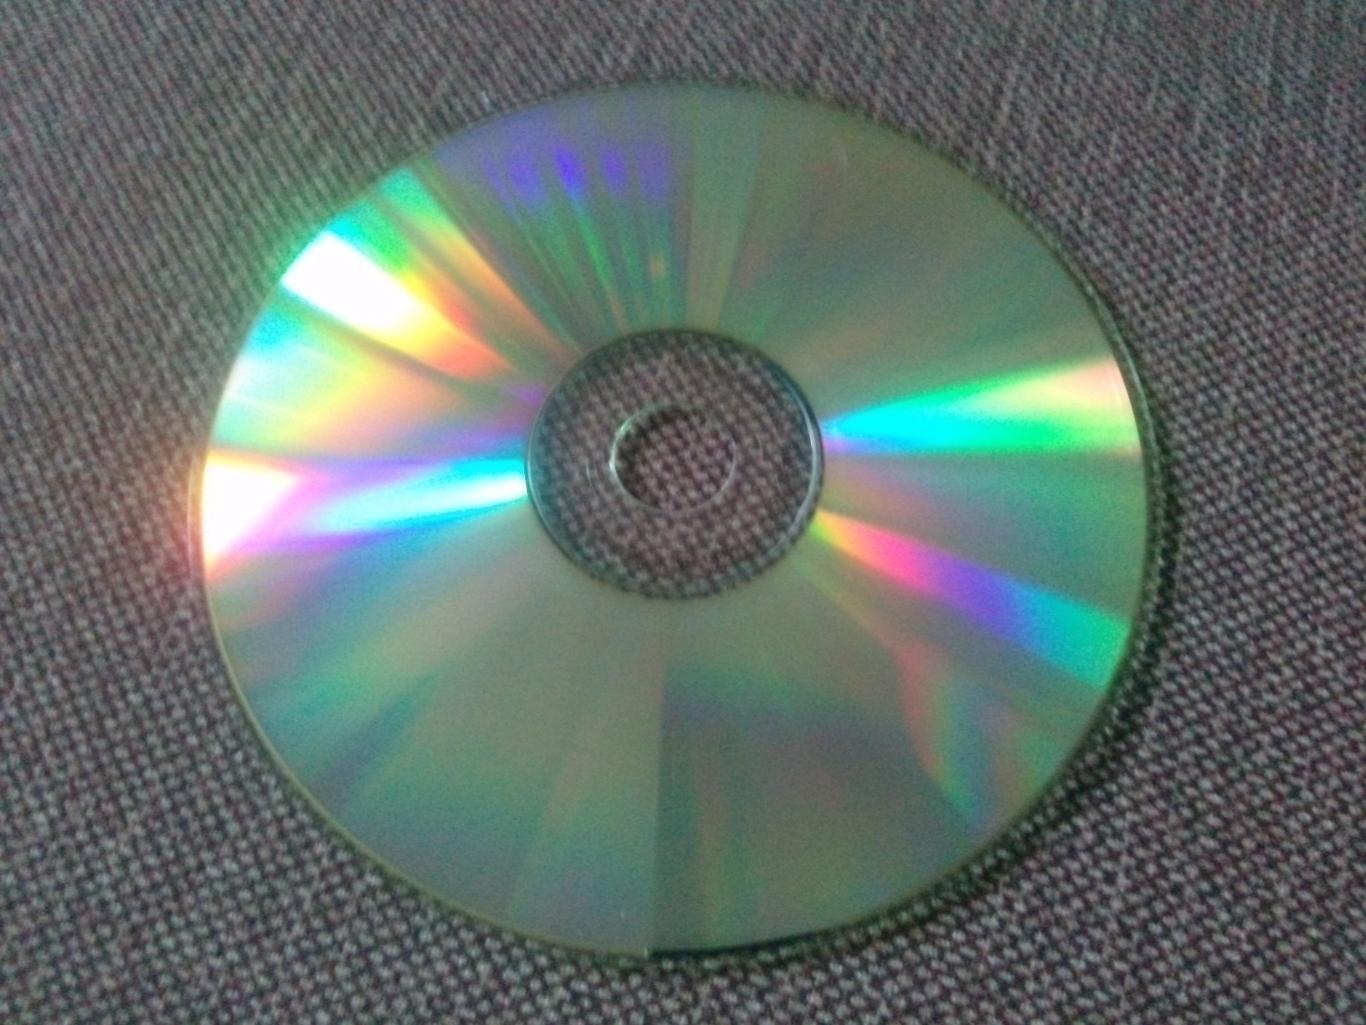 MP - 3 CD диск : группаНогу свело1991 - 2005 гг. 11 альбомов Рок - музыка 6